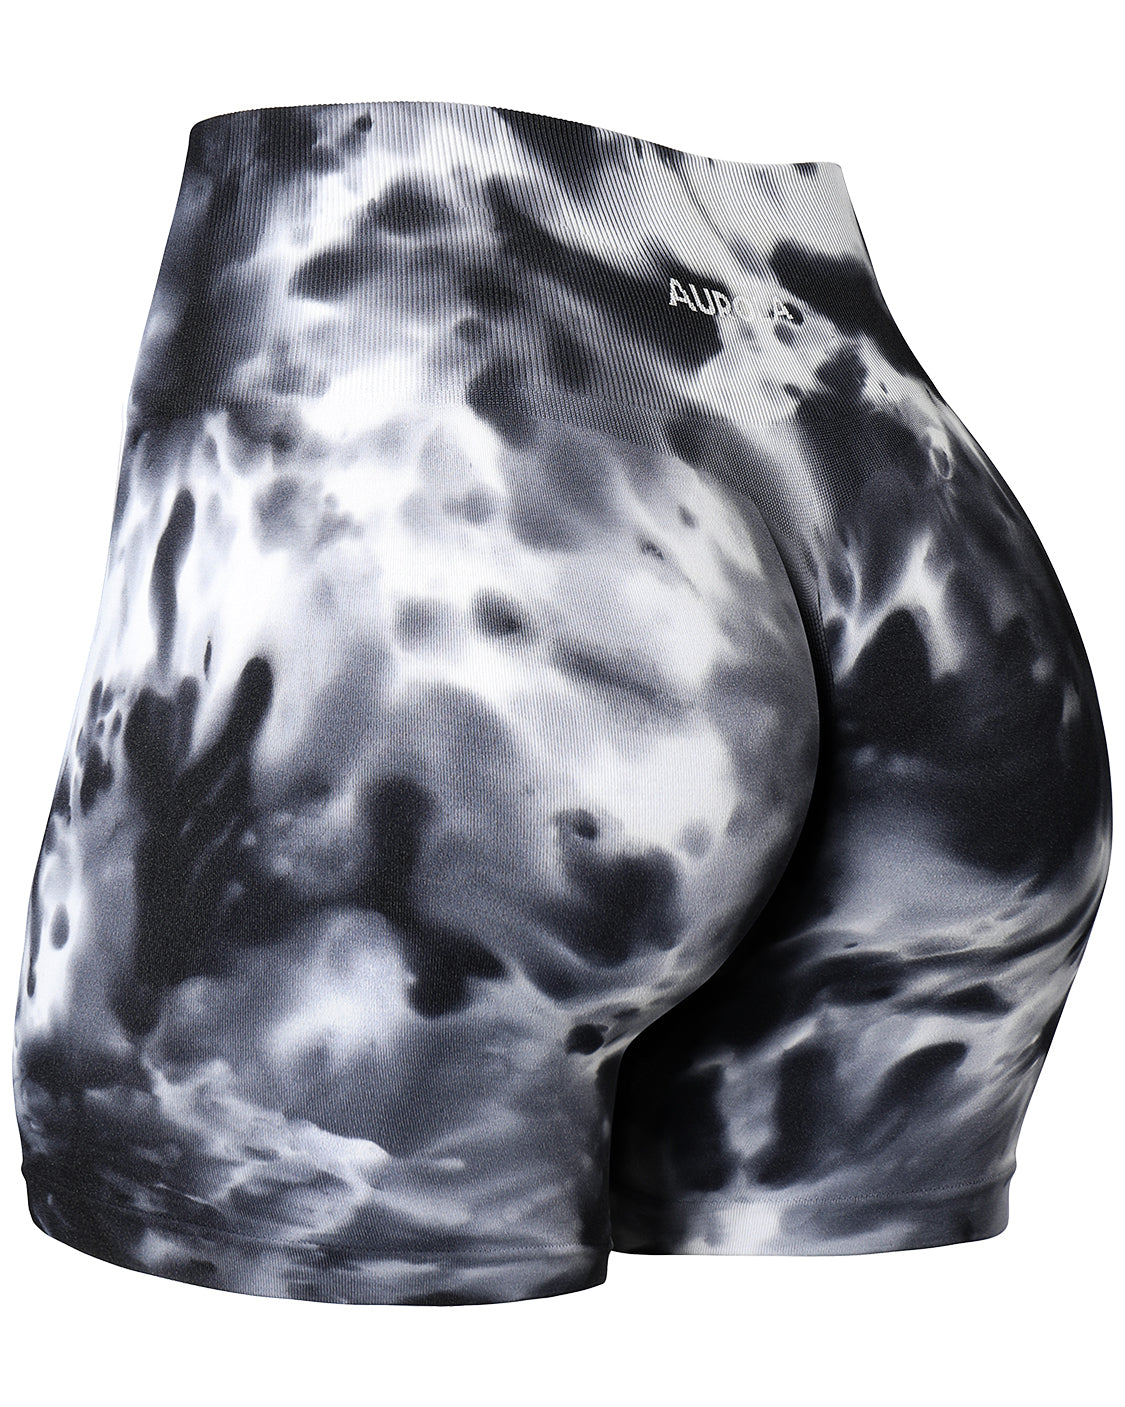 AUROLA Dream Collection Workout Shorts for Women Scrunch Seamless Soft High  Waist Gym Shorts,Asphalt Grey,XS